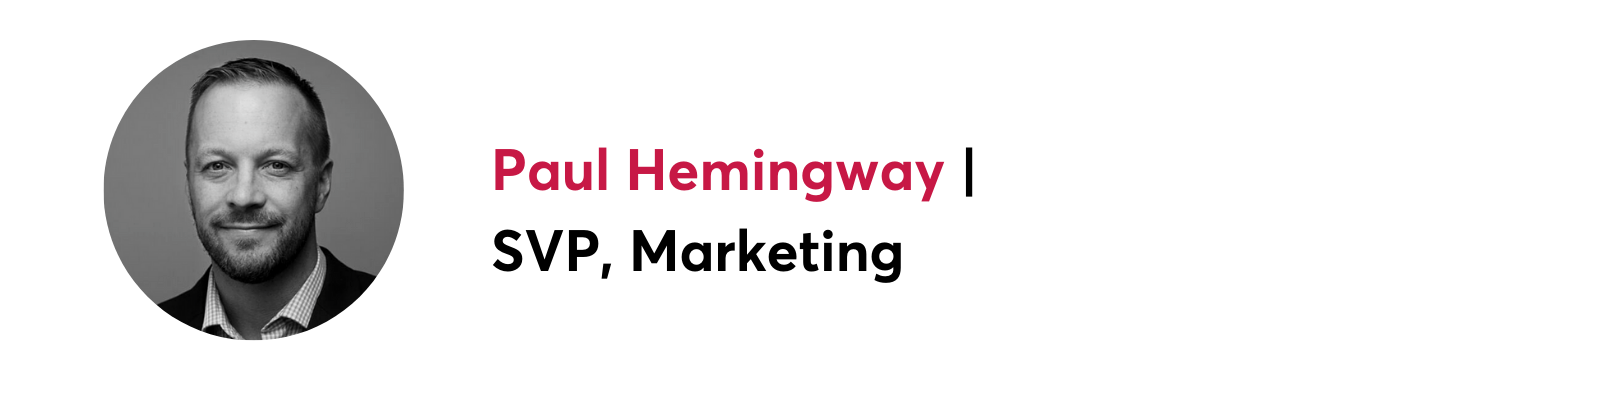 Black and white headshot of Paul Hemingway, SVP, Marketing